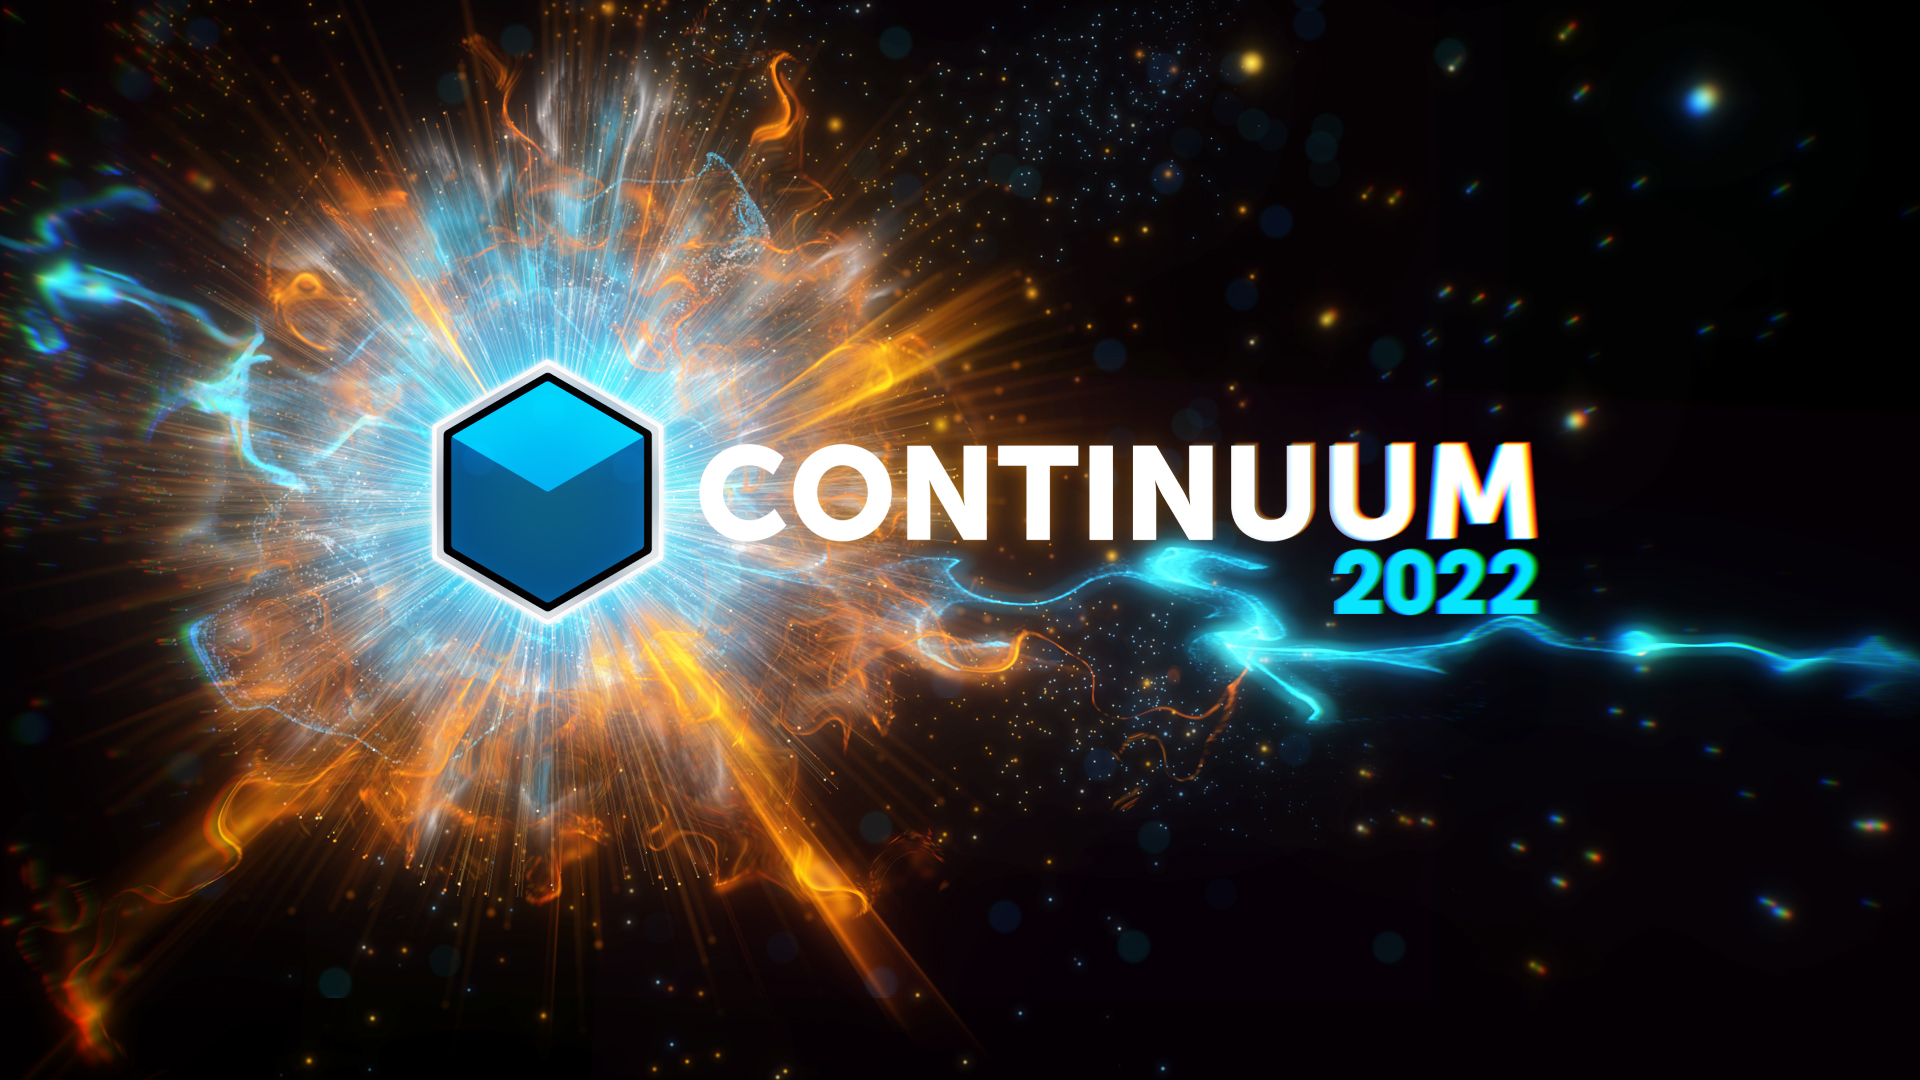 Continuum 2022 hero image